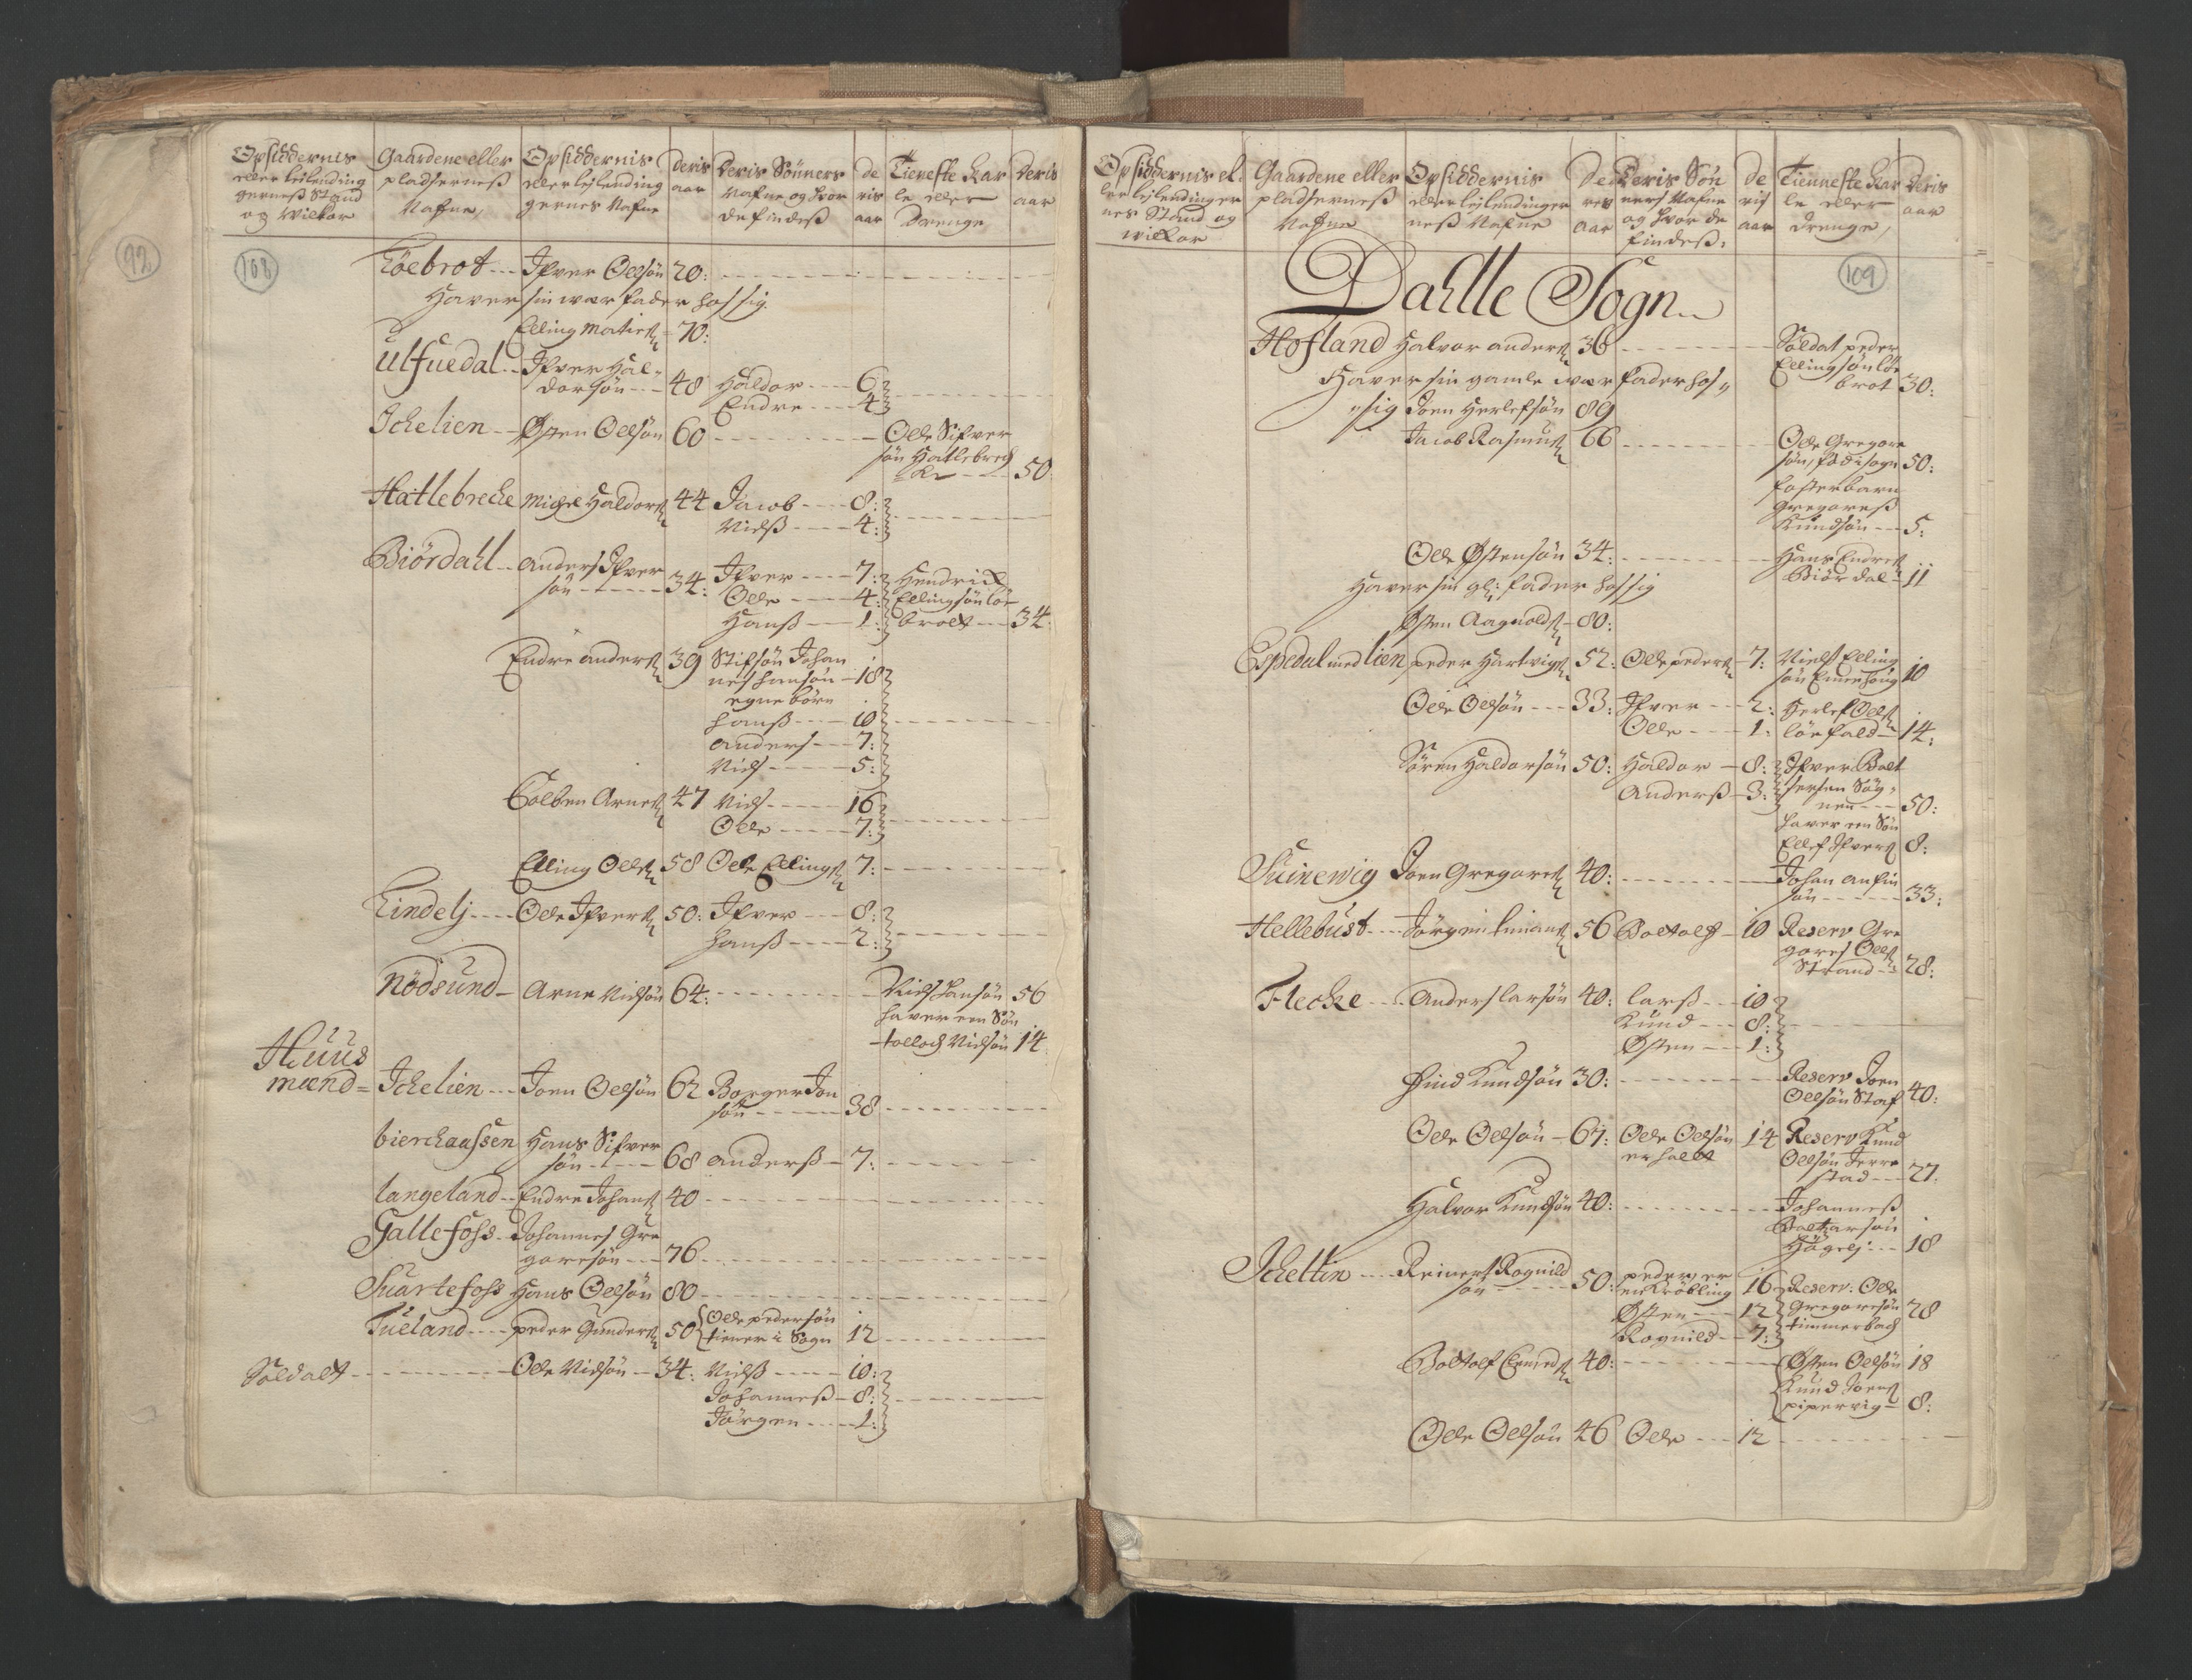 RA, Census (manntall) 1701, no. 9: Sunnfjord fogderi, Nordfjord fogderi and Svanø birk, 1701, p. 108-109